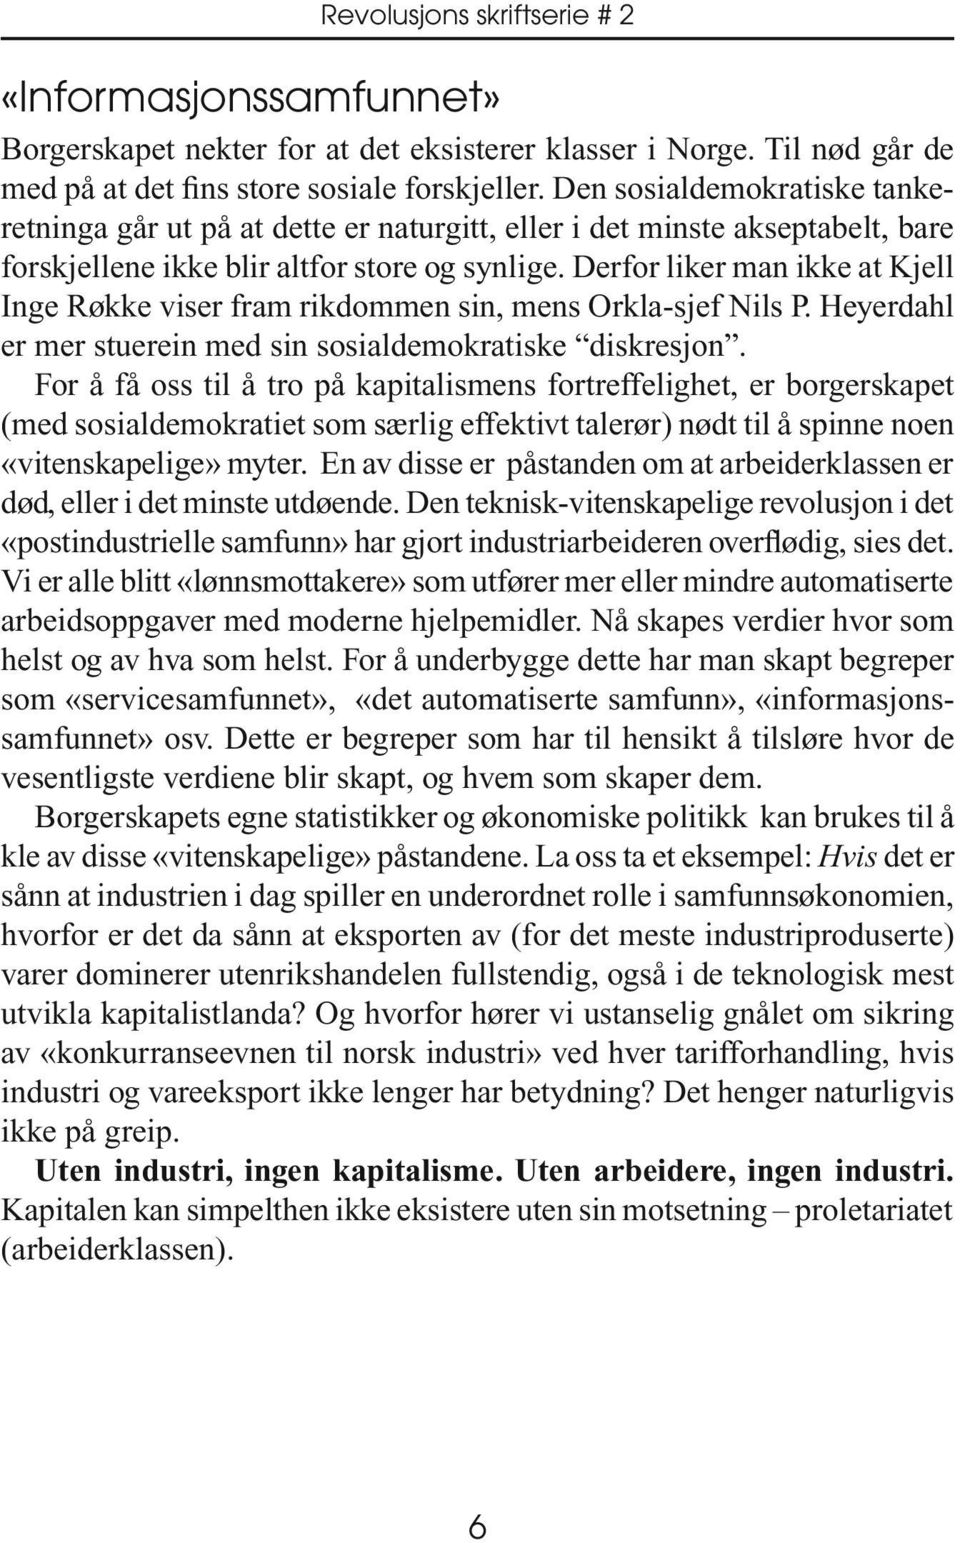 Derfor liker man ikke at Kjell Inge Røkke viser fram rikdommen sin, mens Orkla-sjef Nils P. Heyerdahl er mer stuerein med sin sosialdemokratiske diskresjon.